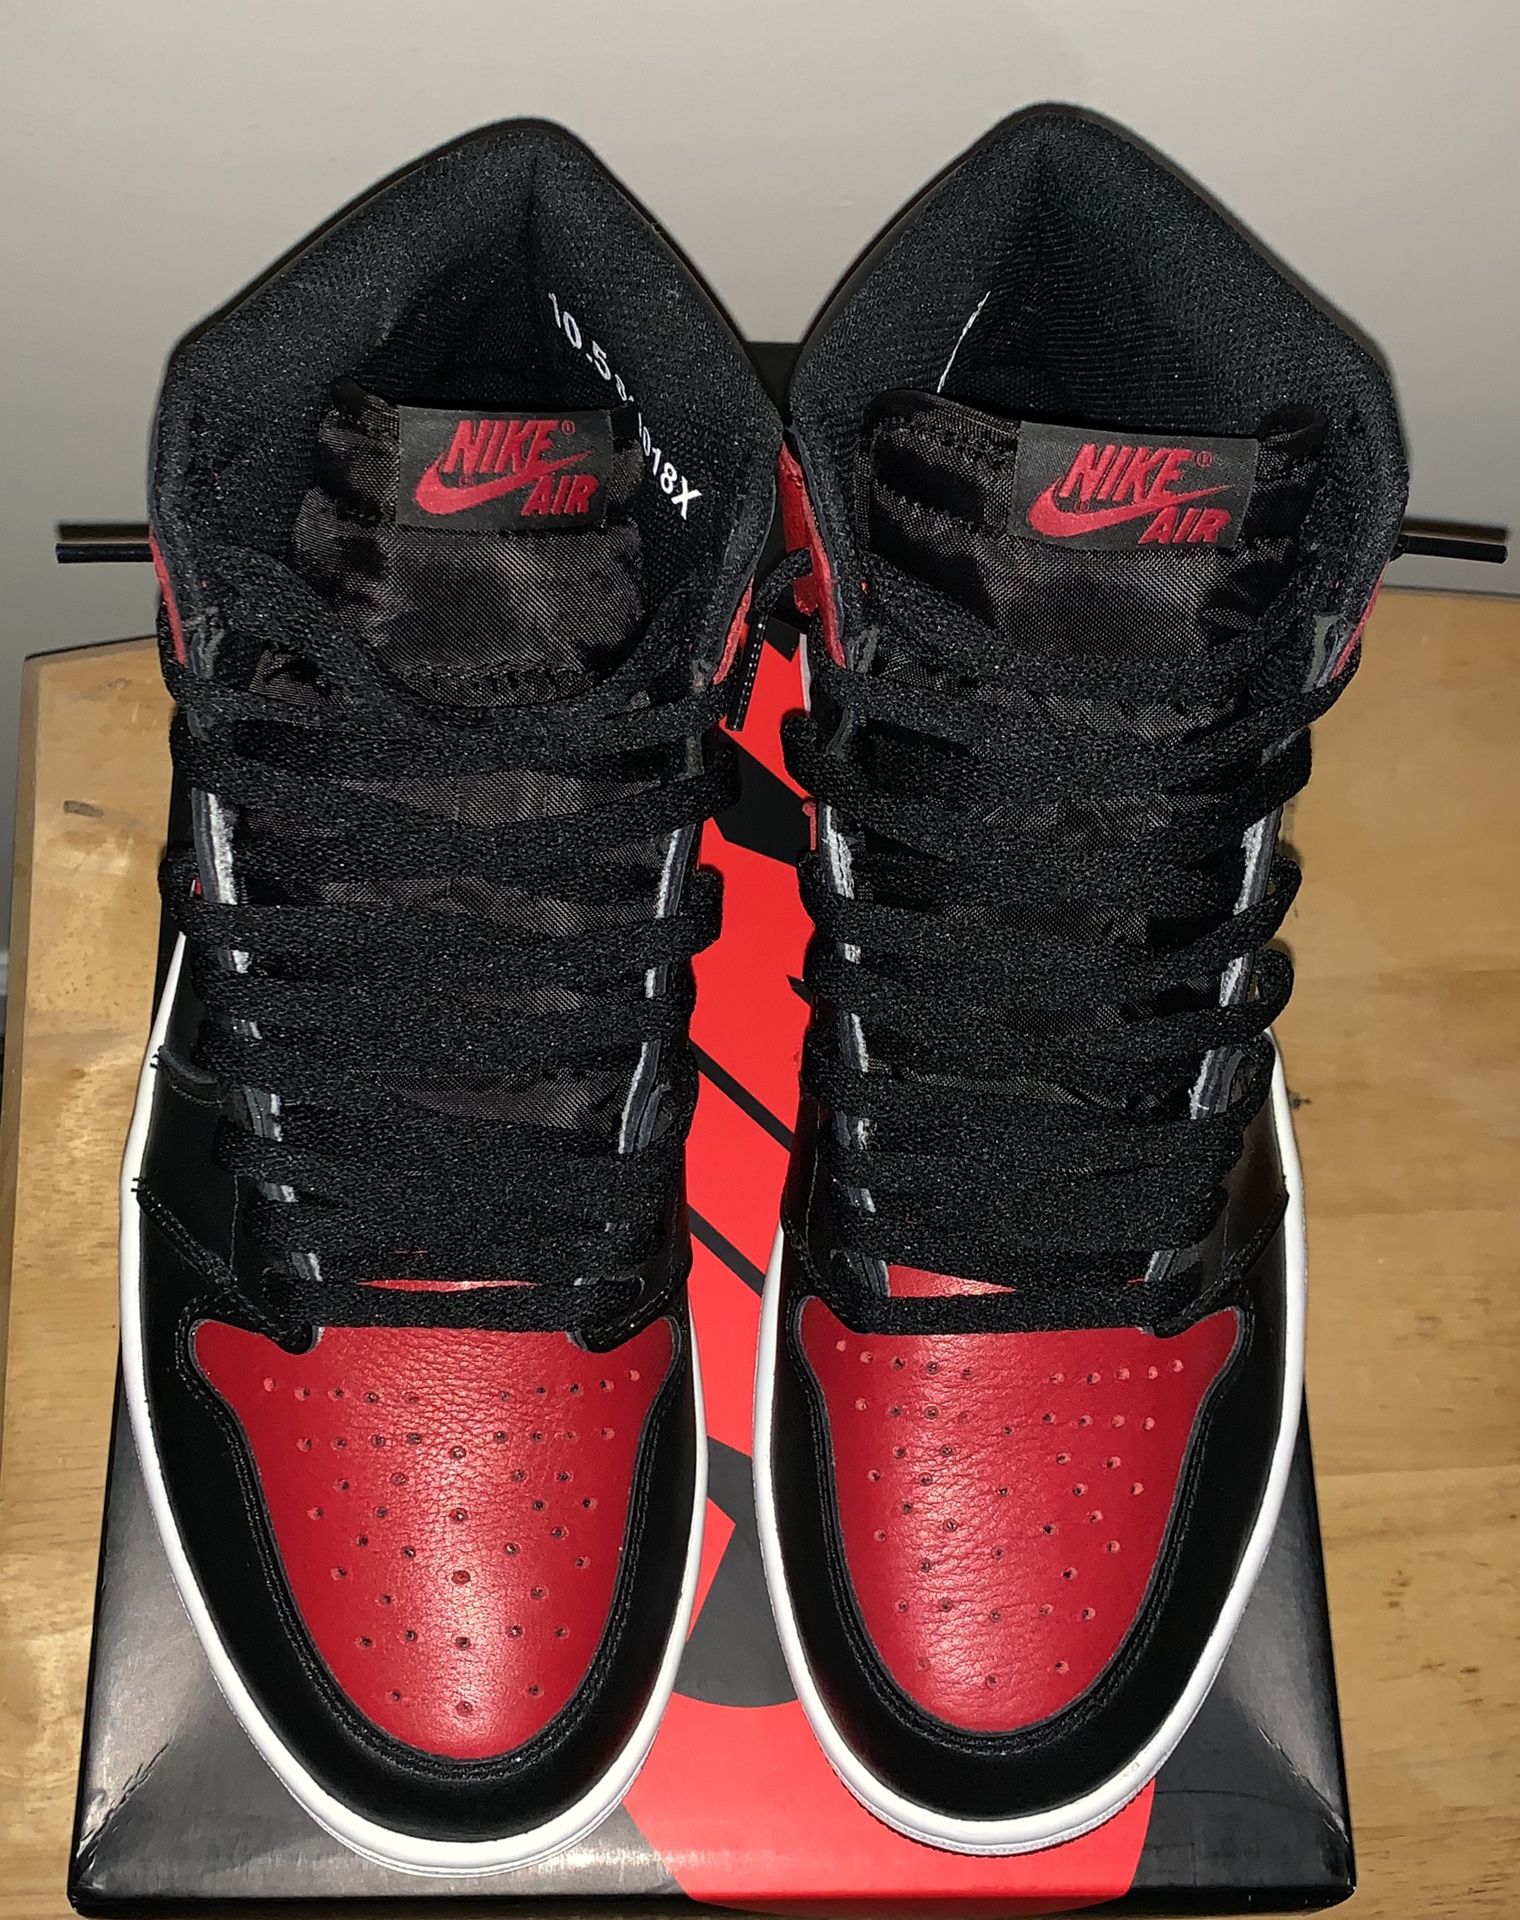 Nike Air Jordan 1 Retro High OG Bred Banned Black Red 2016